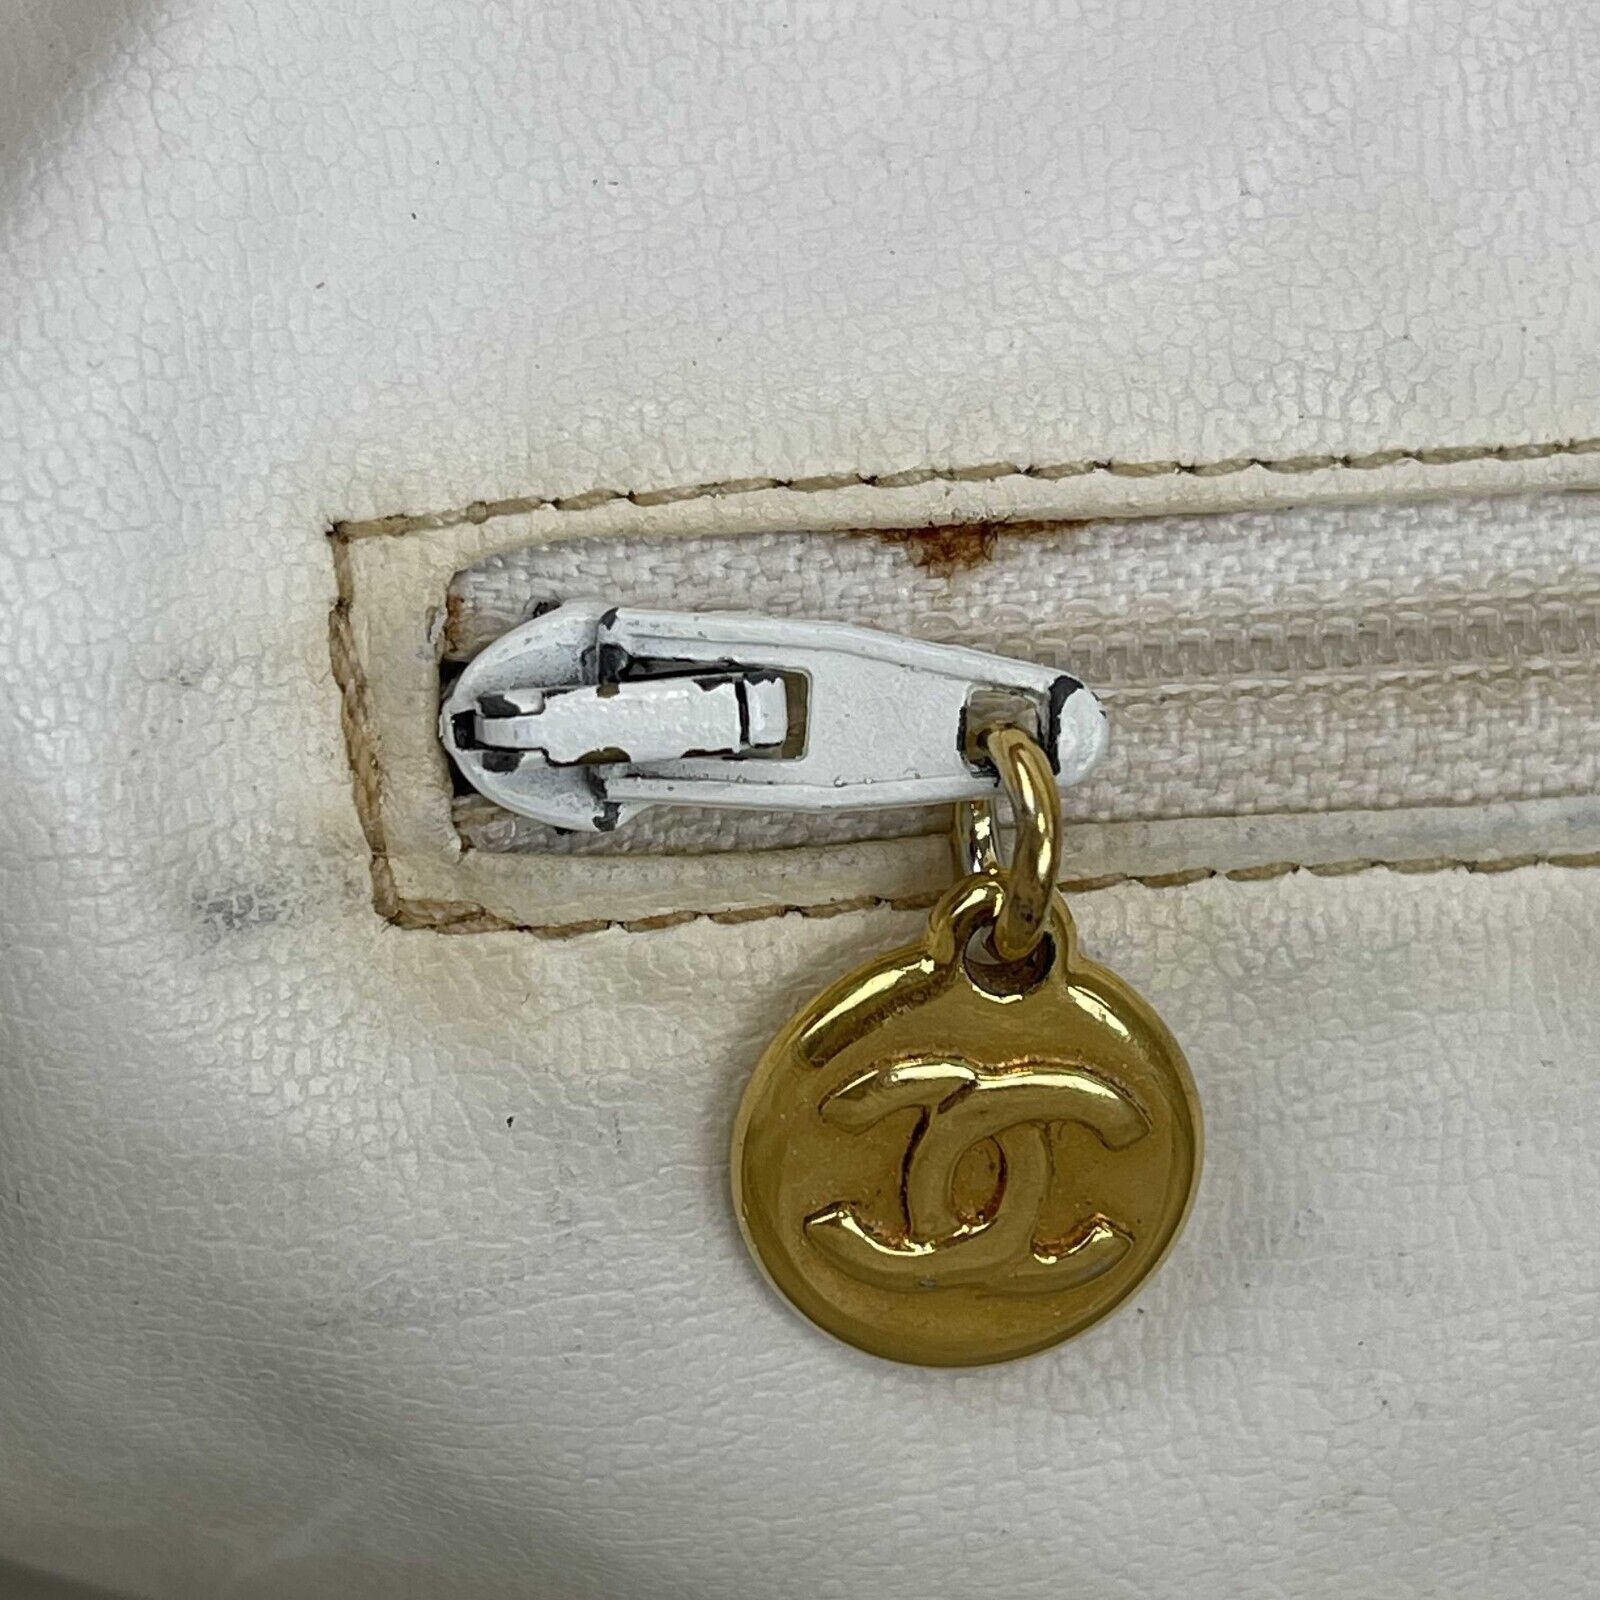 chanel vintage white bag